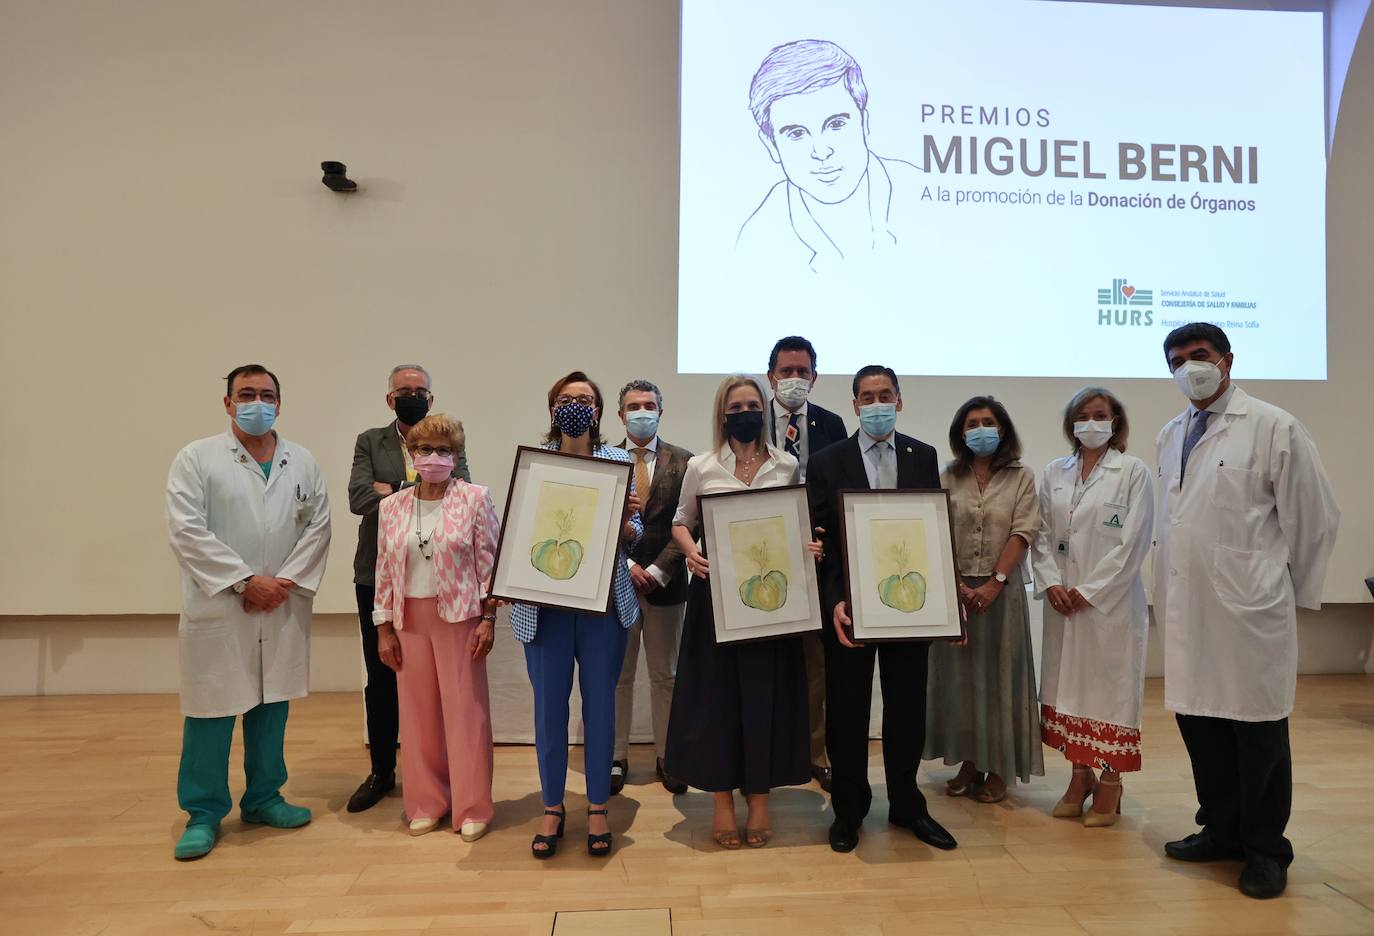 La entrega de los premios Miguel Berni en Córdoba, en imágenes